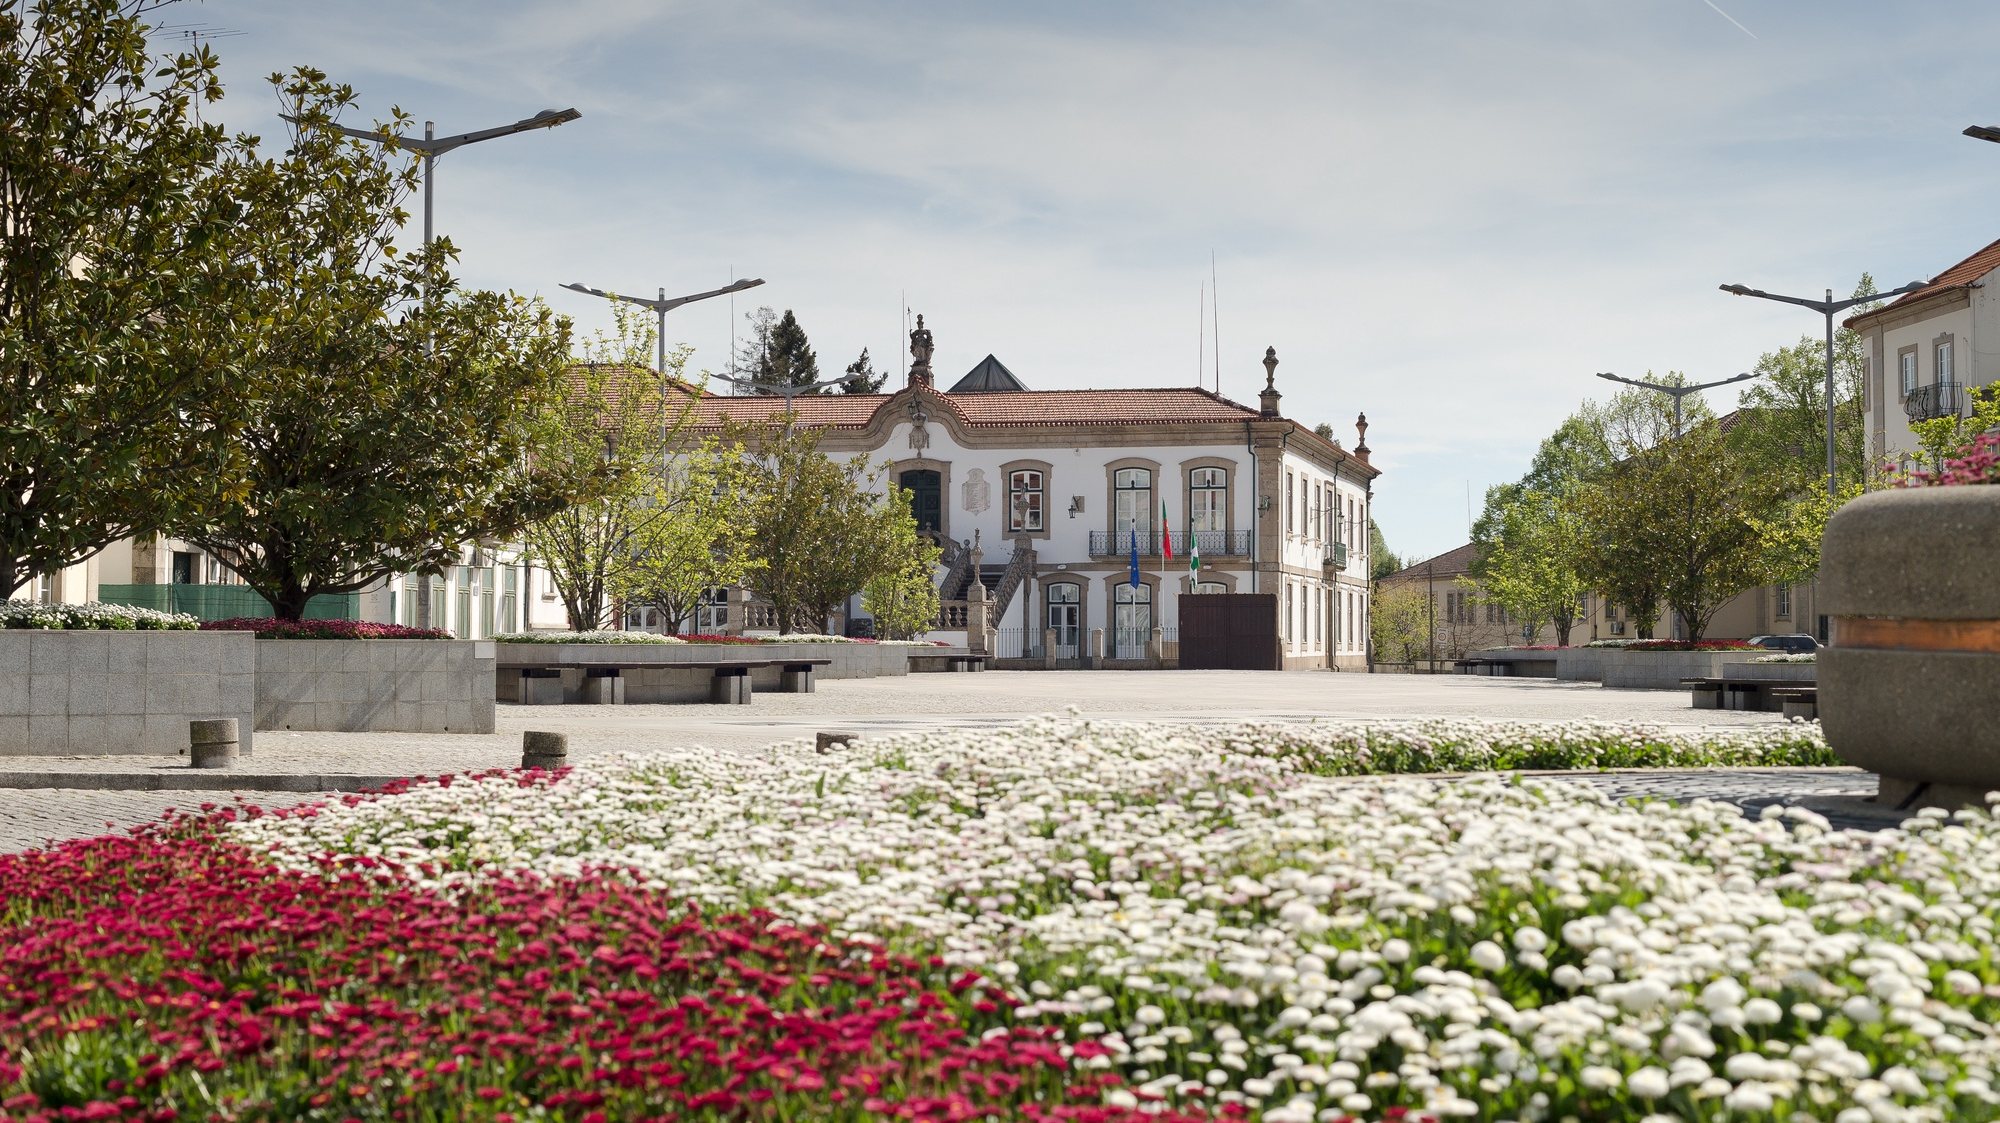 Edifício da Câmara Municipal de Vila Real, concelho e distrito de Vila Real, 9 de abril de 2017. PEDRO SARMENTO COSTA / LUSA